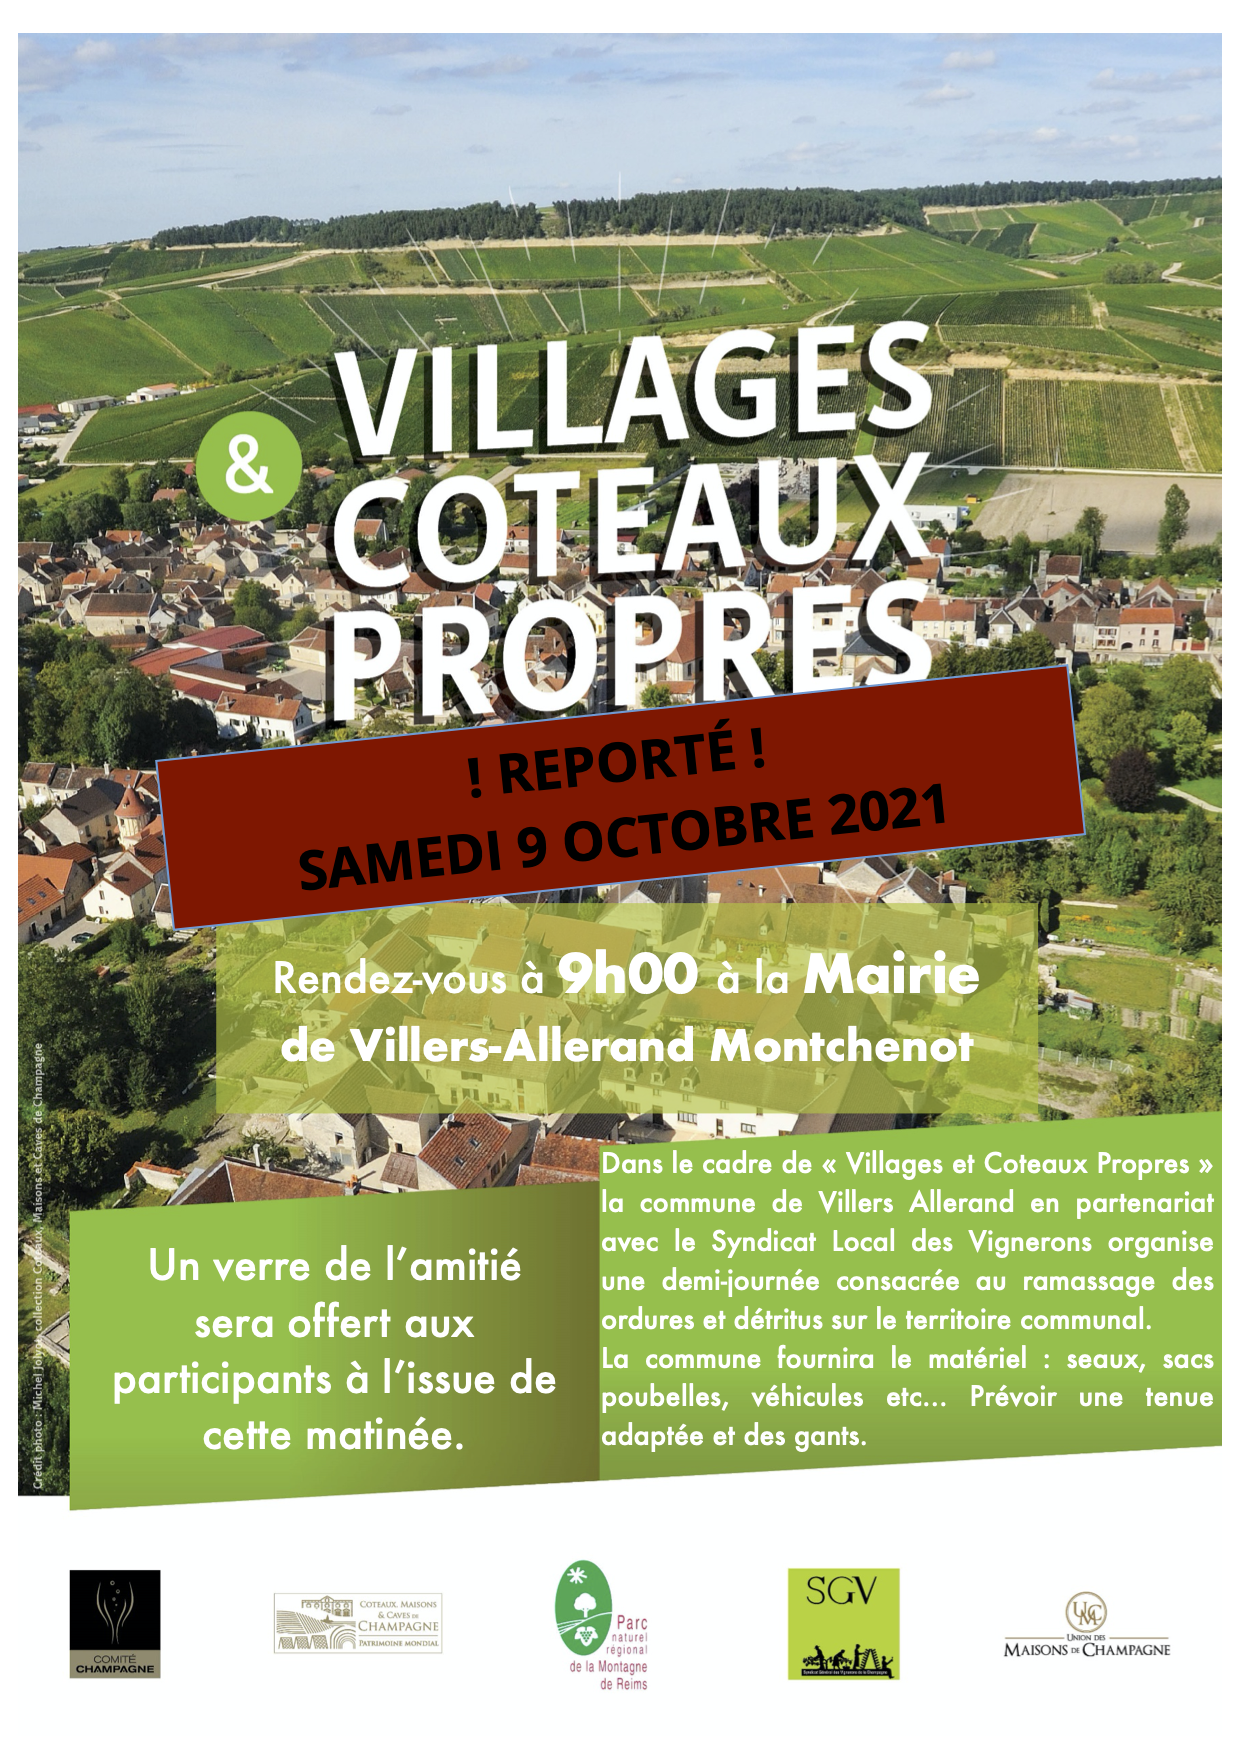 Villages et Coteaux Propres @ Mairie de Villers-Allerand Montchenot | Villers-Allerand | Grand Est | France